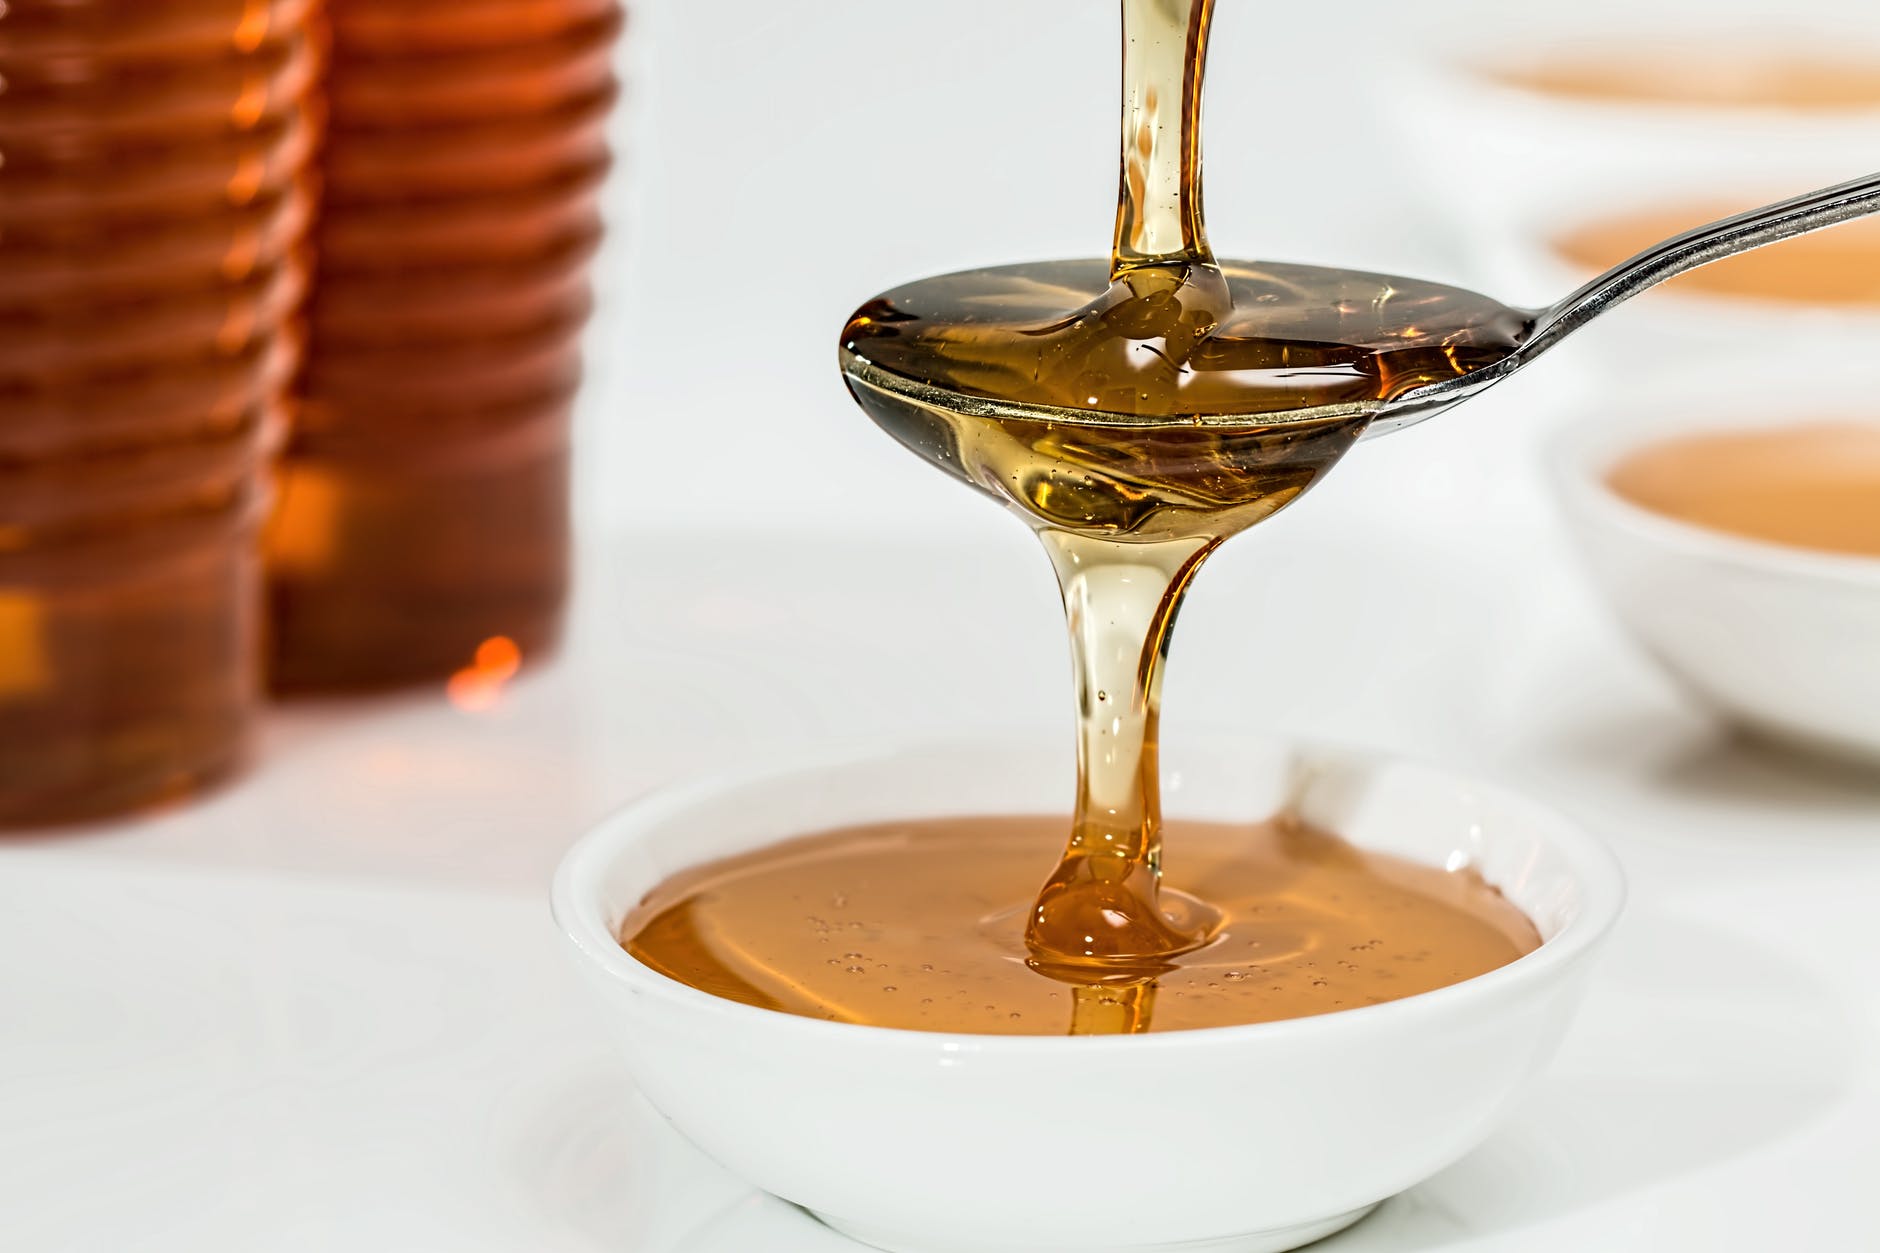 Med jako známé sladidlo s tradicí v českých zemích je vhodná alternativa cukru.